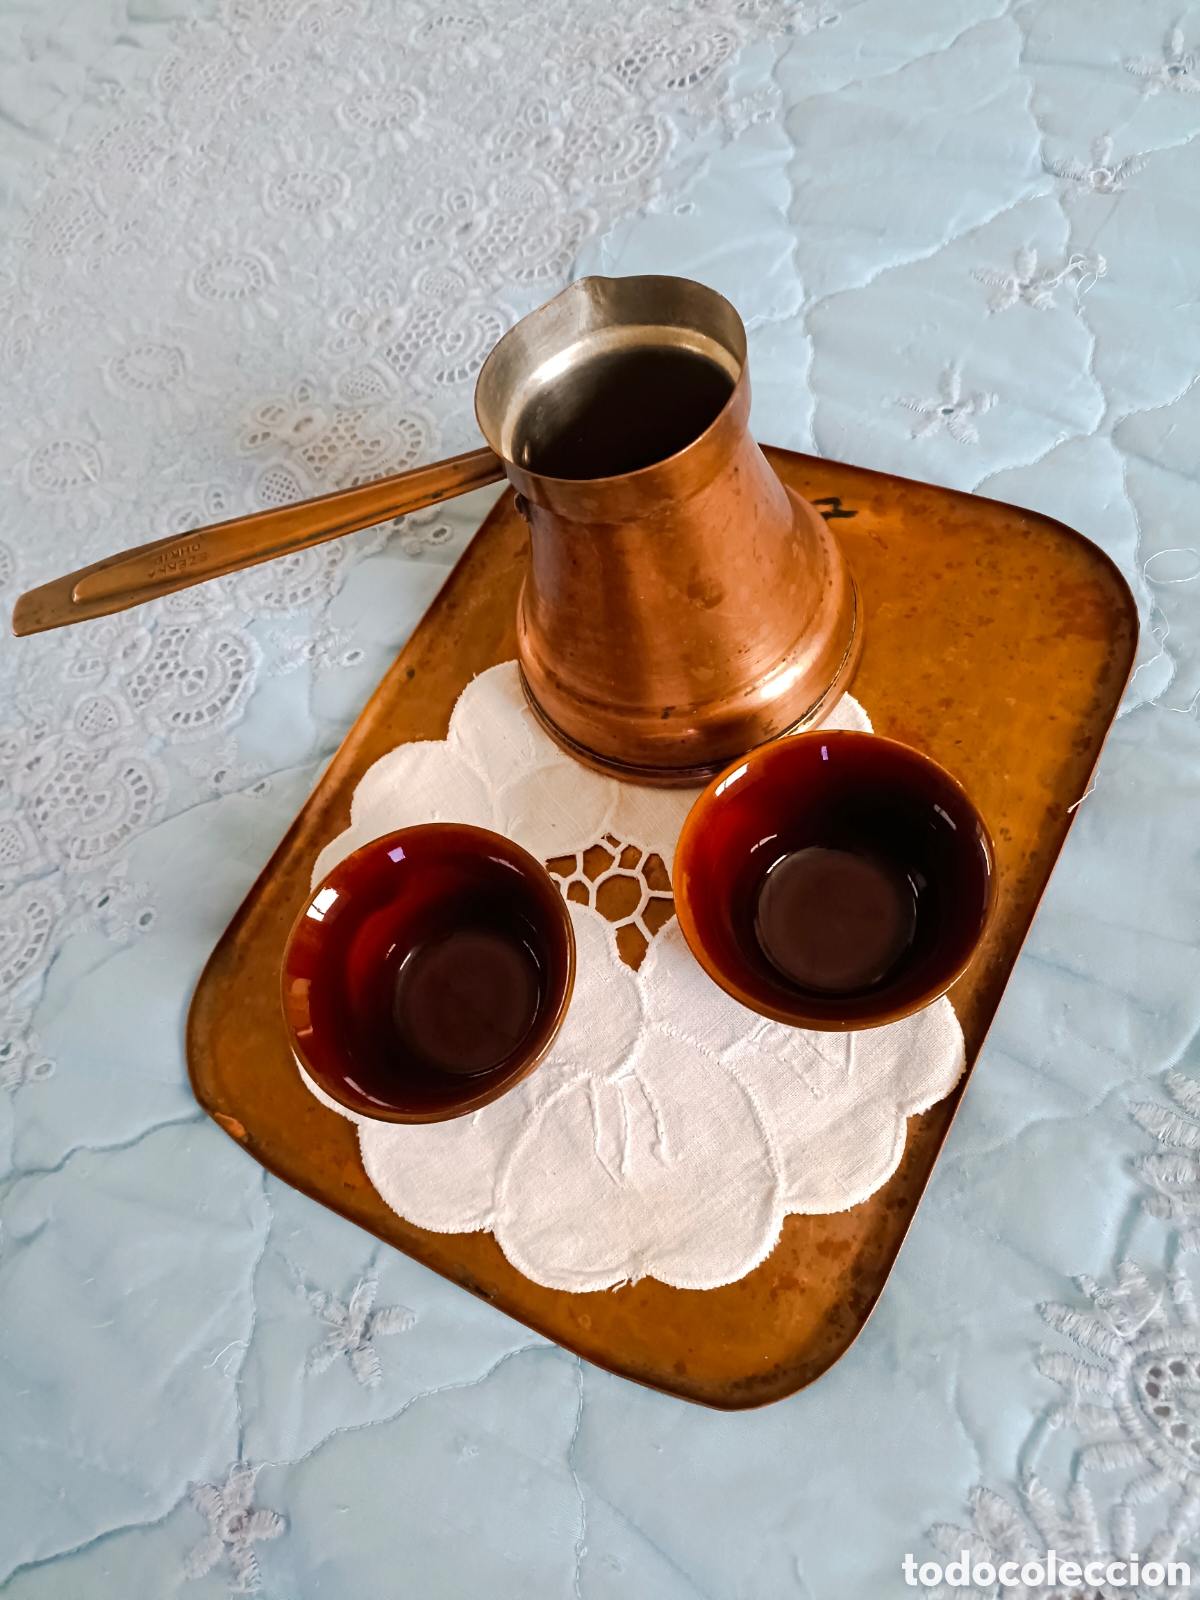 antigua cafetera turca - Compra venta en todocoleccion